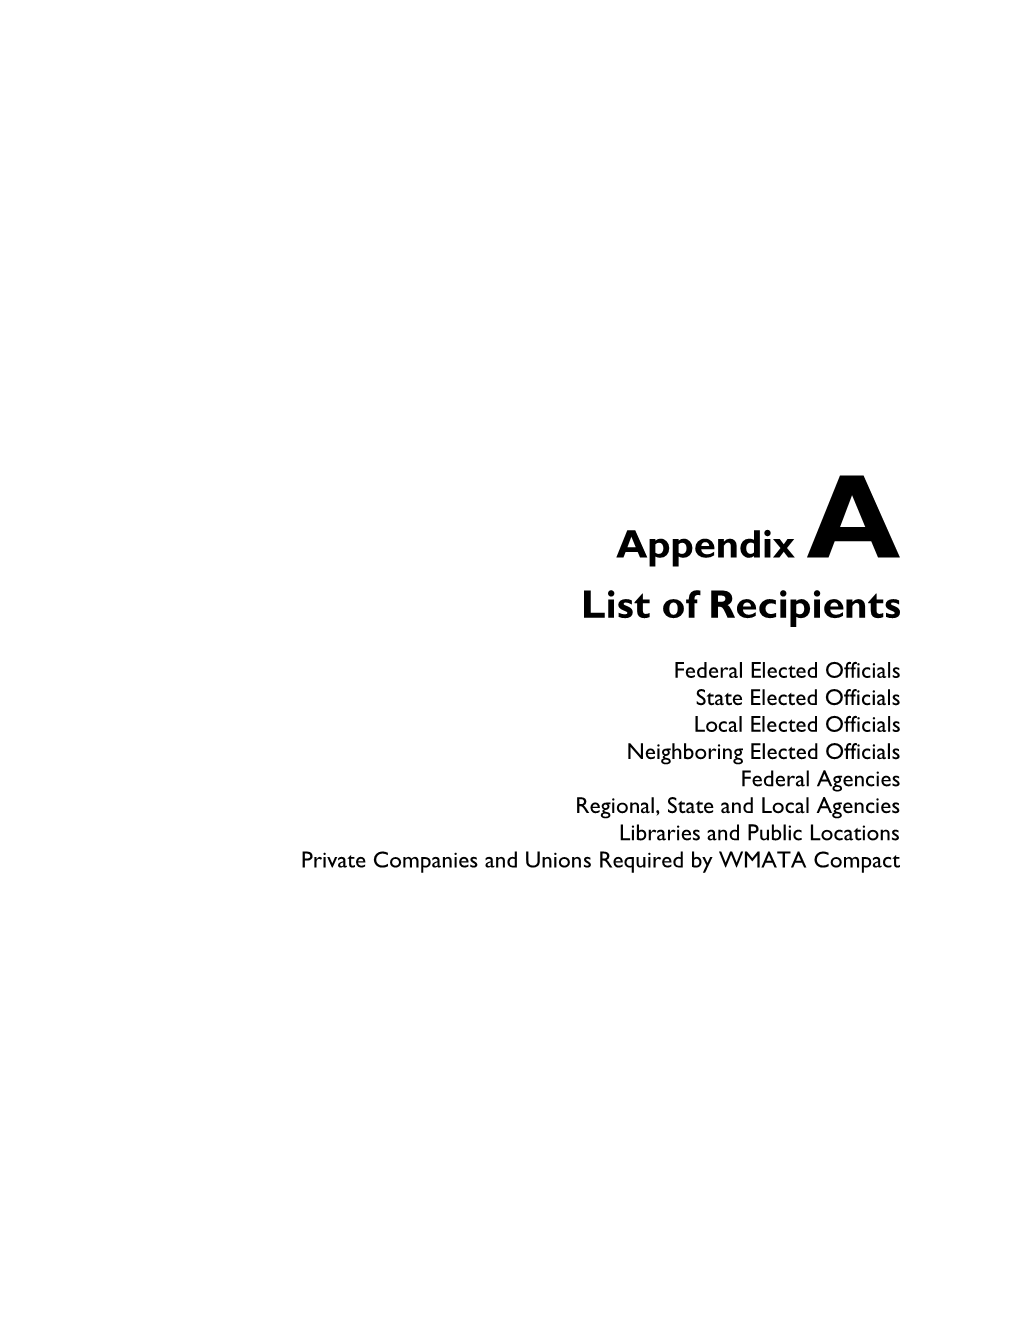 Appendix a List of Recipients